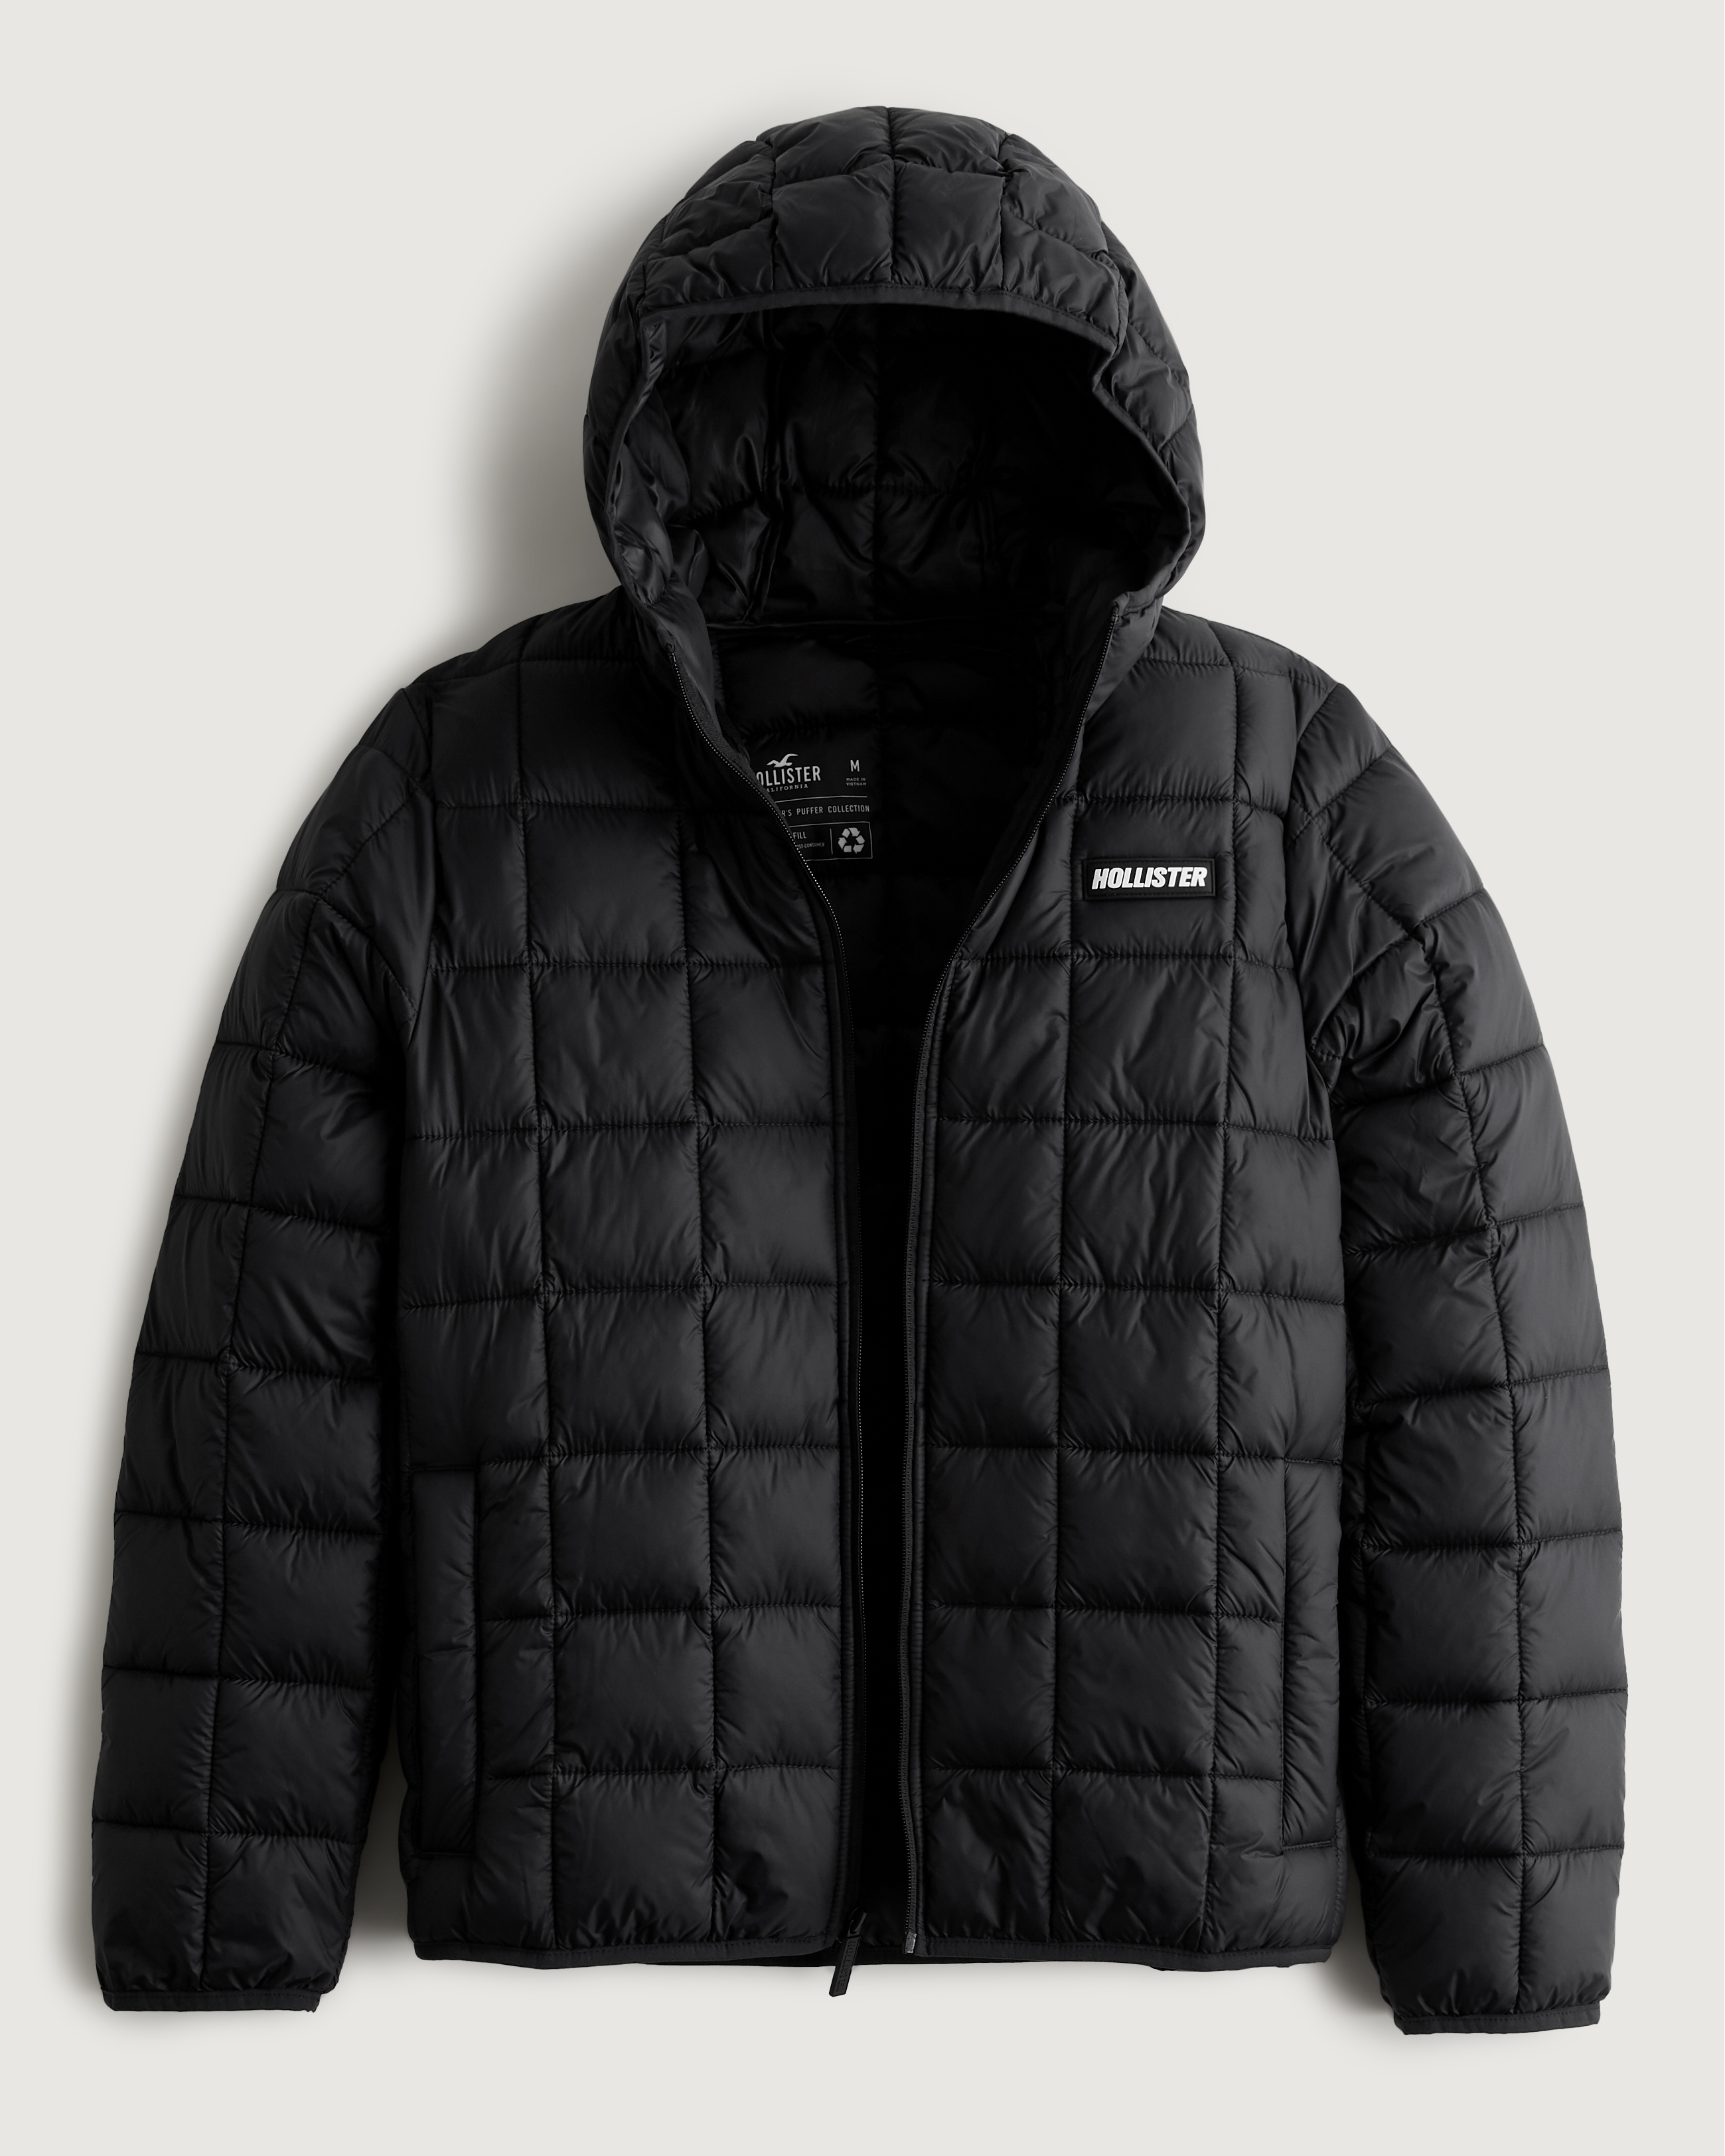 Hollister Co. WIDE CHANNEL COZY PUFFER - Winter jacket - black - Zalando.de